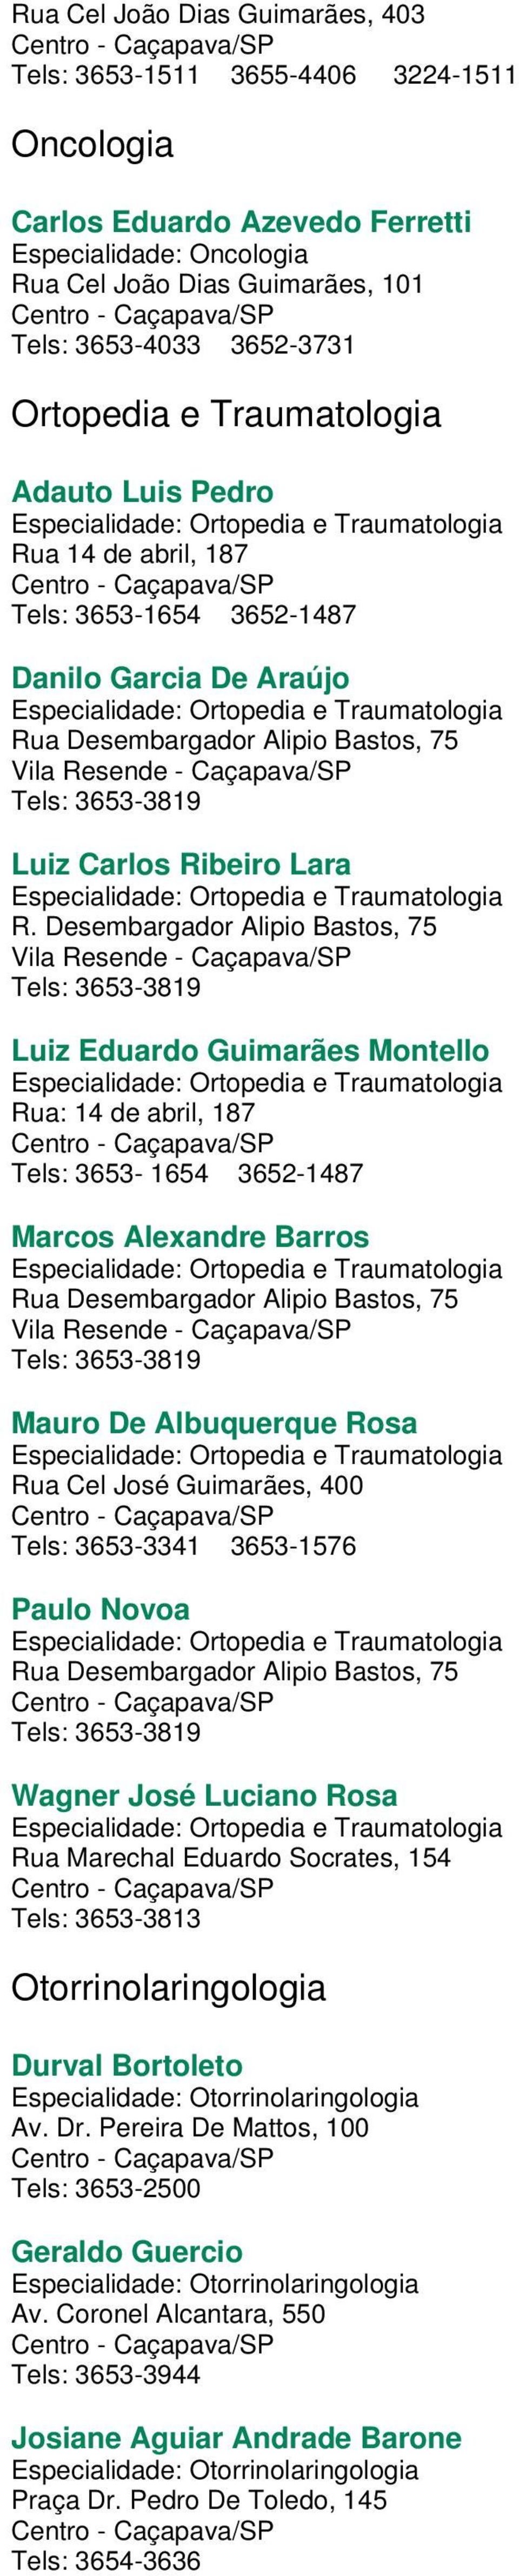 Rua Desembargador Alipio Bastos, 75 Tels: 3653-3819 Luiz Carlos Ribeiro Lara Especialidade: Ortopedia e Traumatologia R.